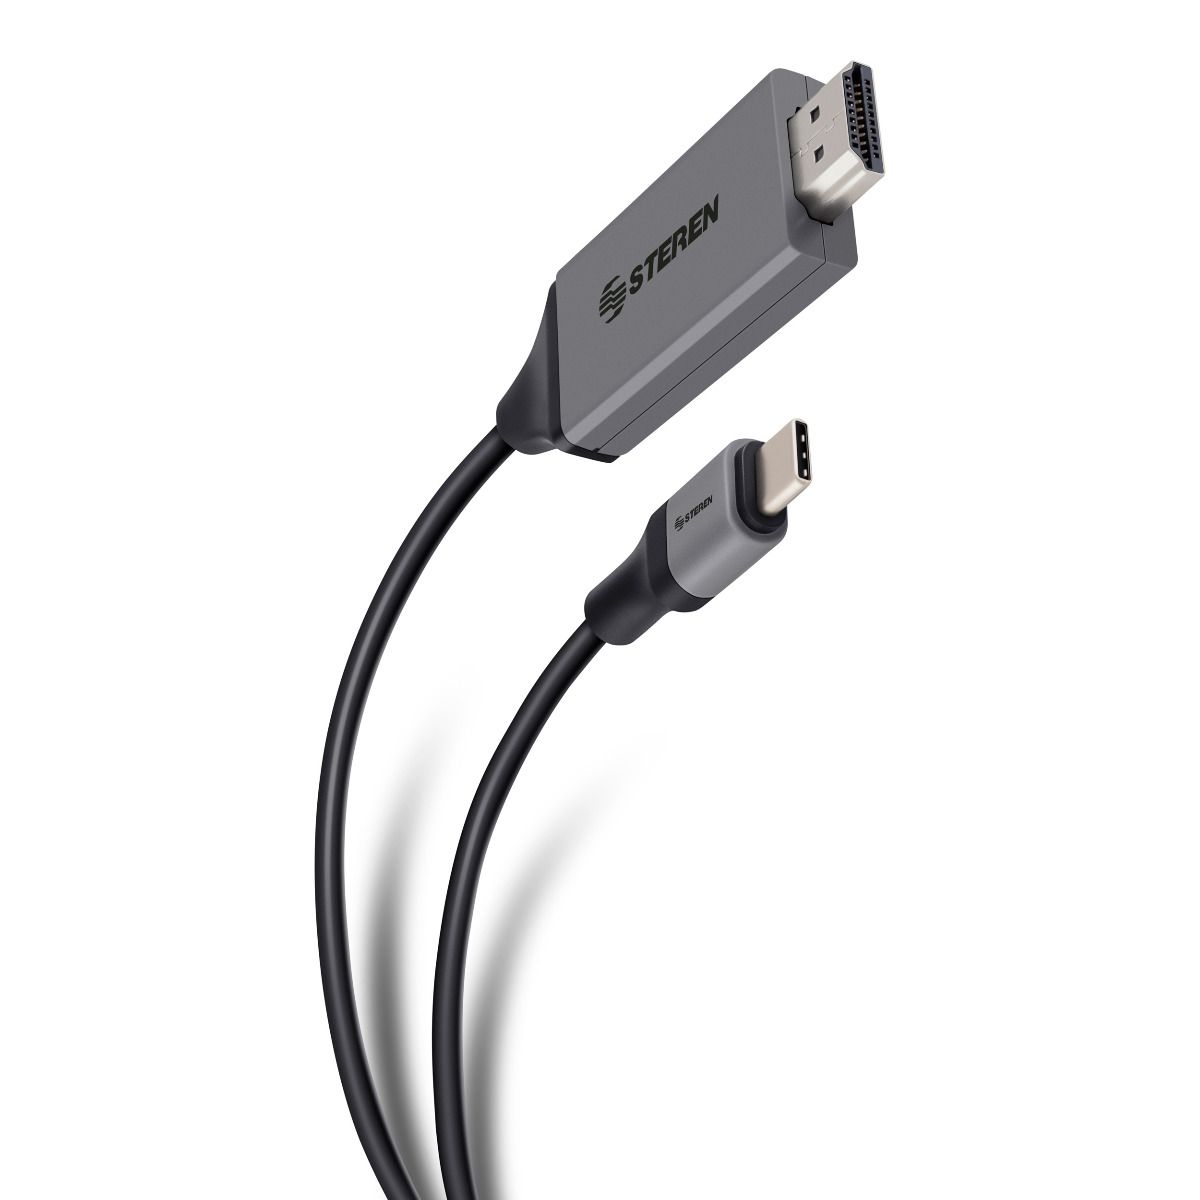 Adaptador USB-C a HDMI para conexión de móvil o tablet con TV